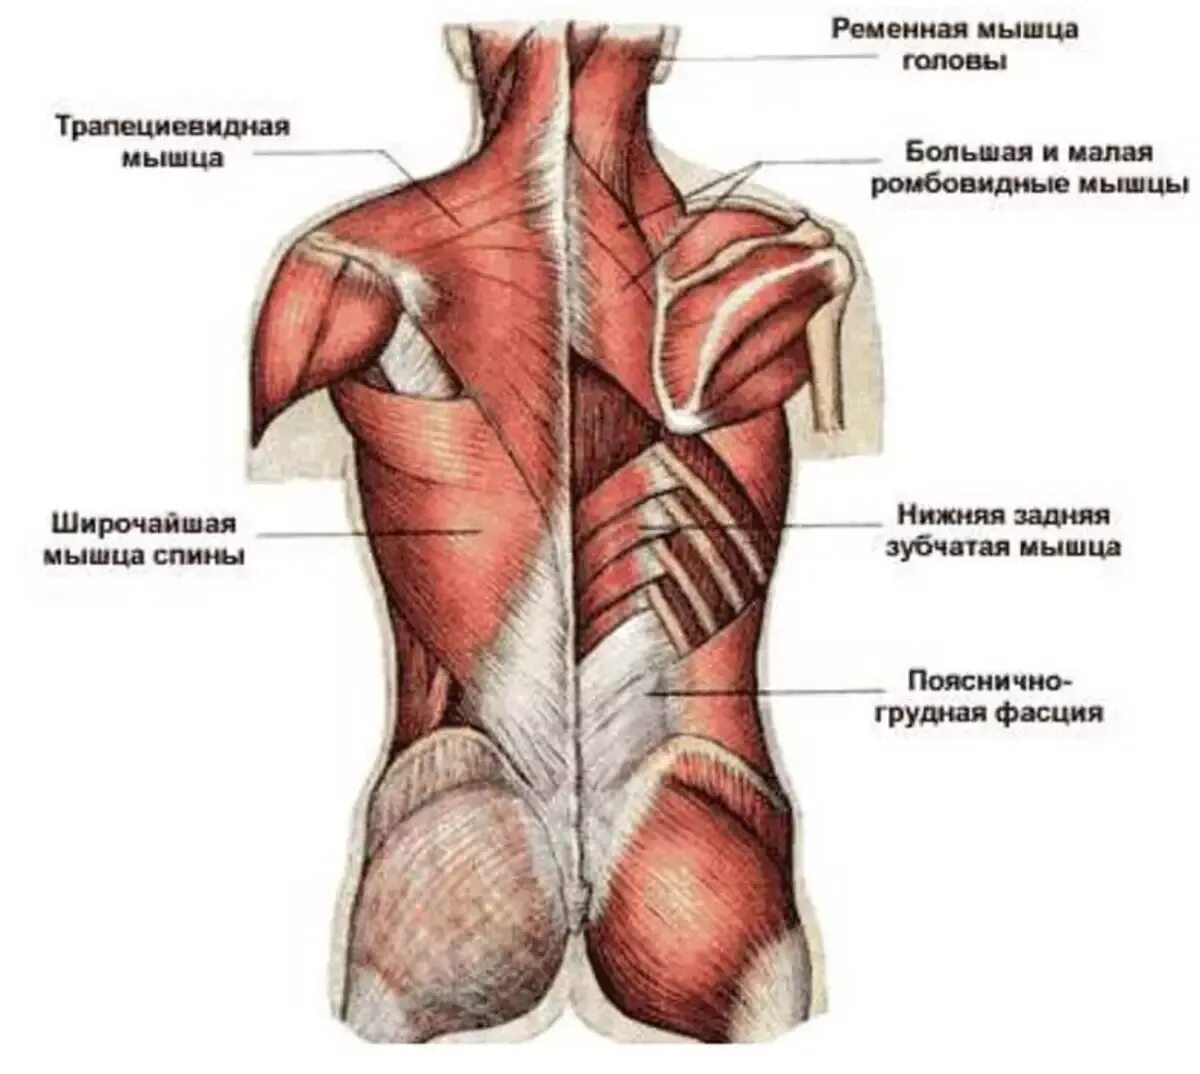 Поясница левая часть. Атлас Синельников мышцы спины. Трапециевидная мышца спины анатомия. Фасции мышцы спины человека анатомия. Мышцы верхней части спины анатомия.